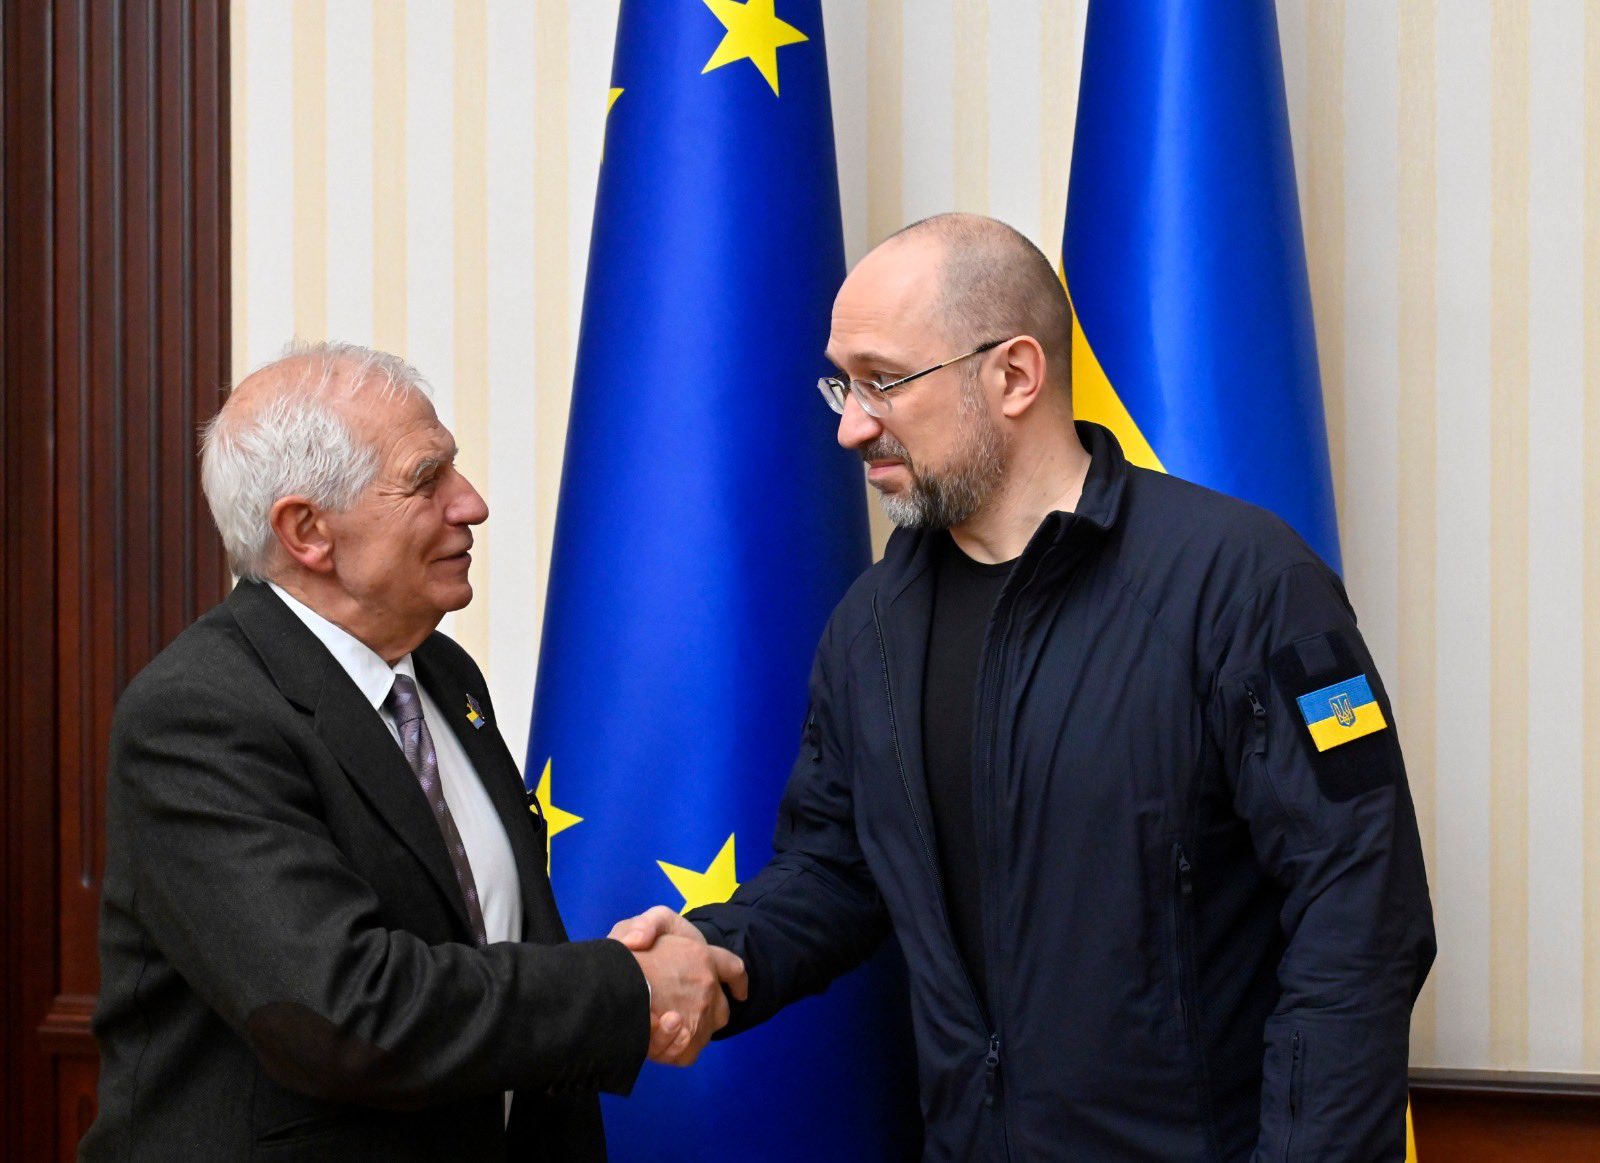 ЕС выделит €25 млн на разминирование территорий Украины — Боррель